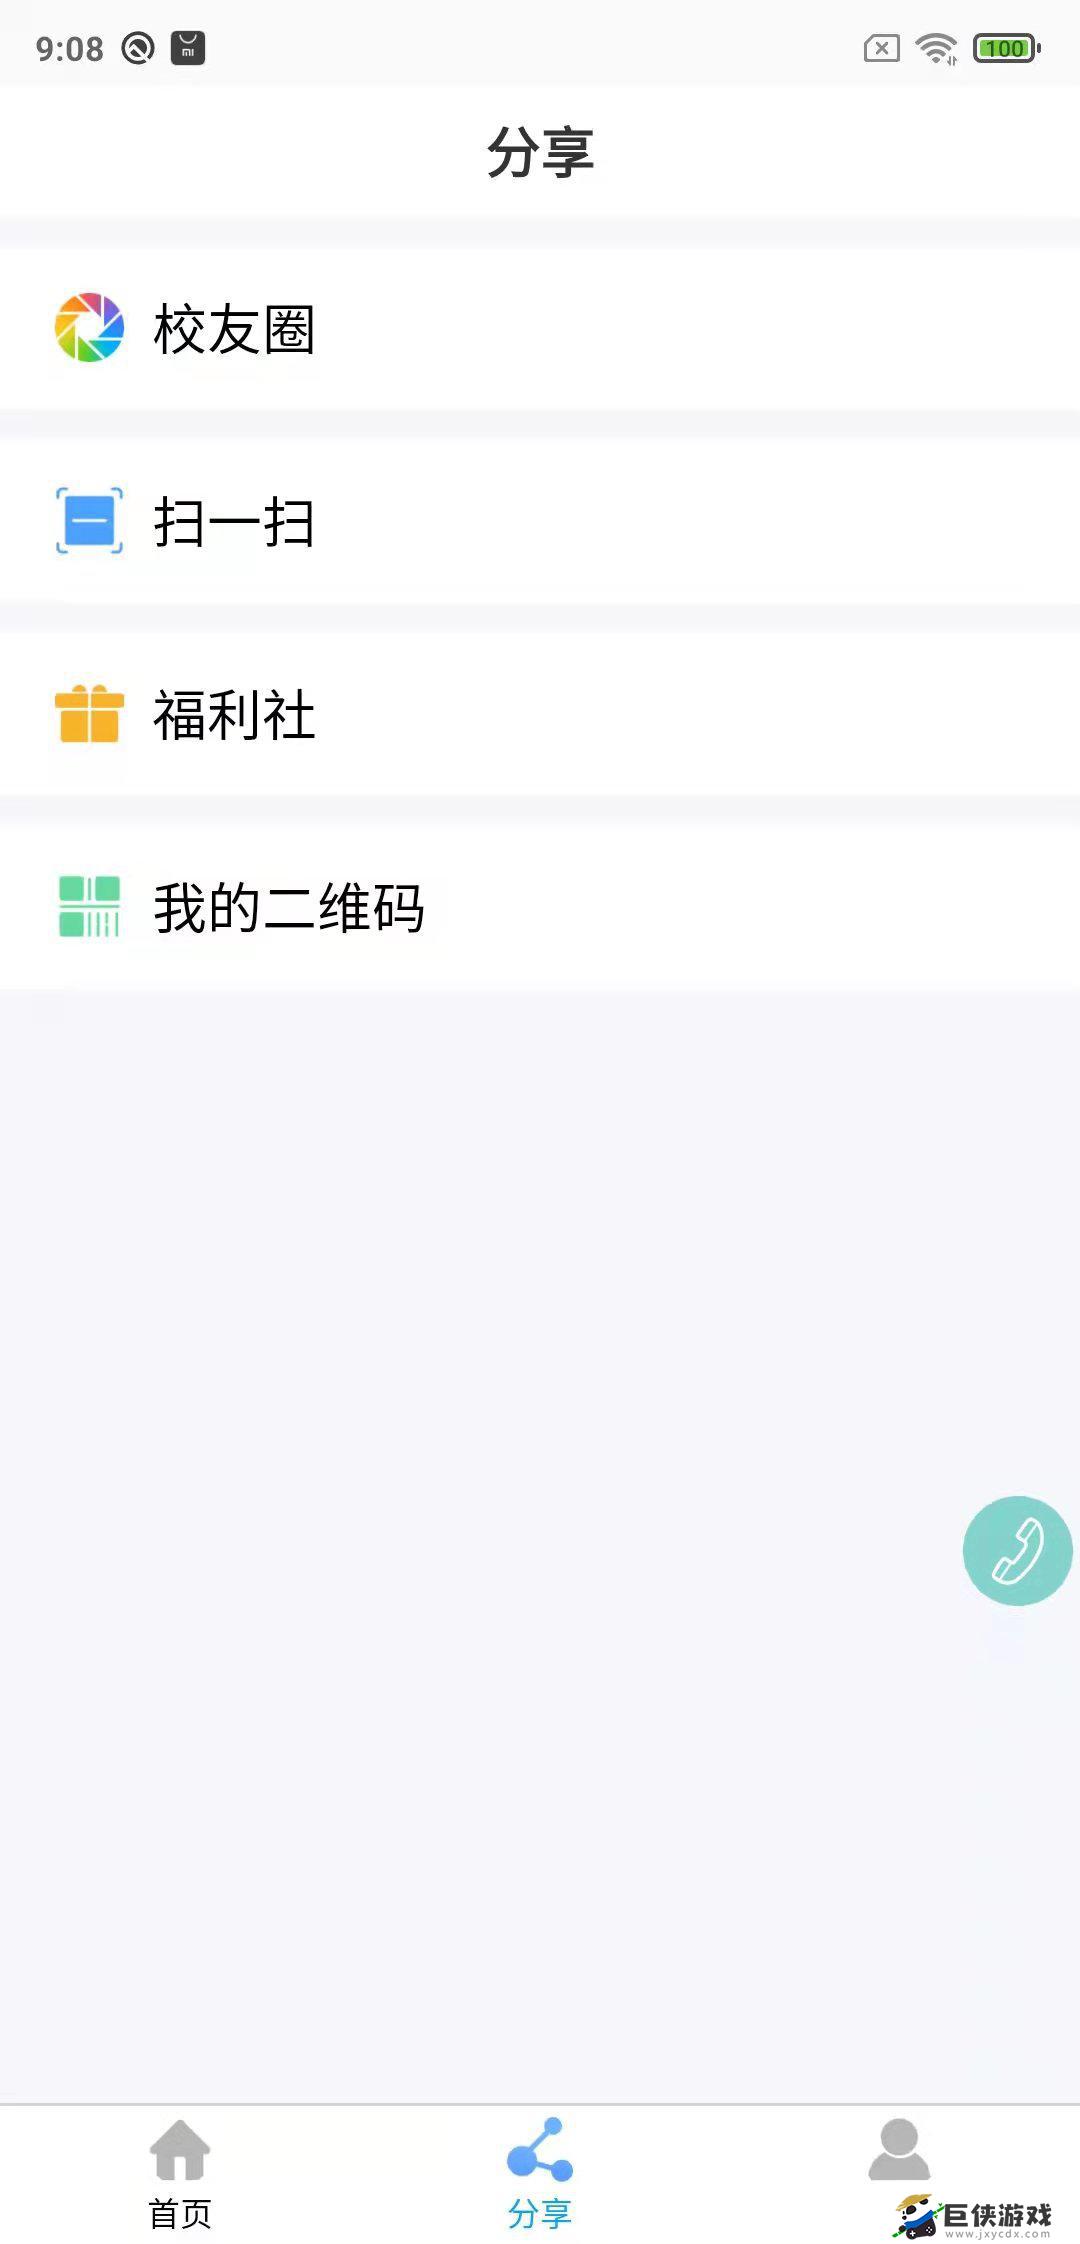 鑫考云校园下载app